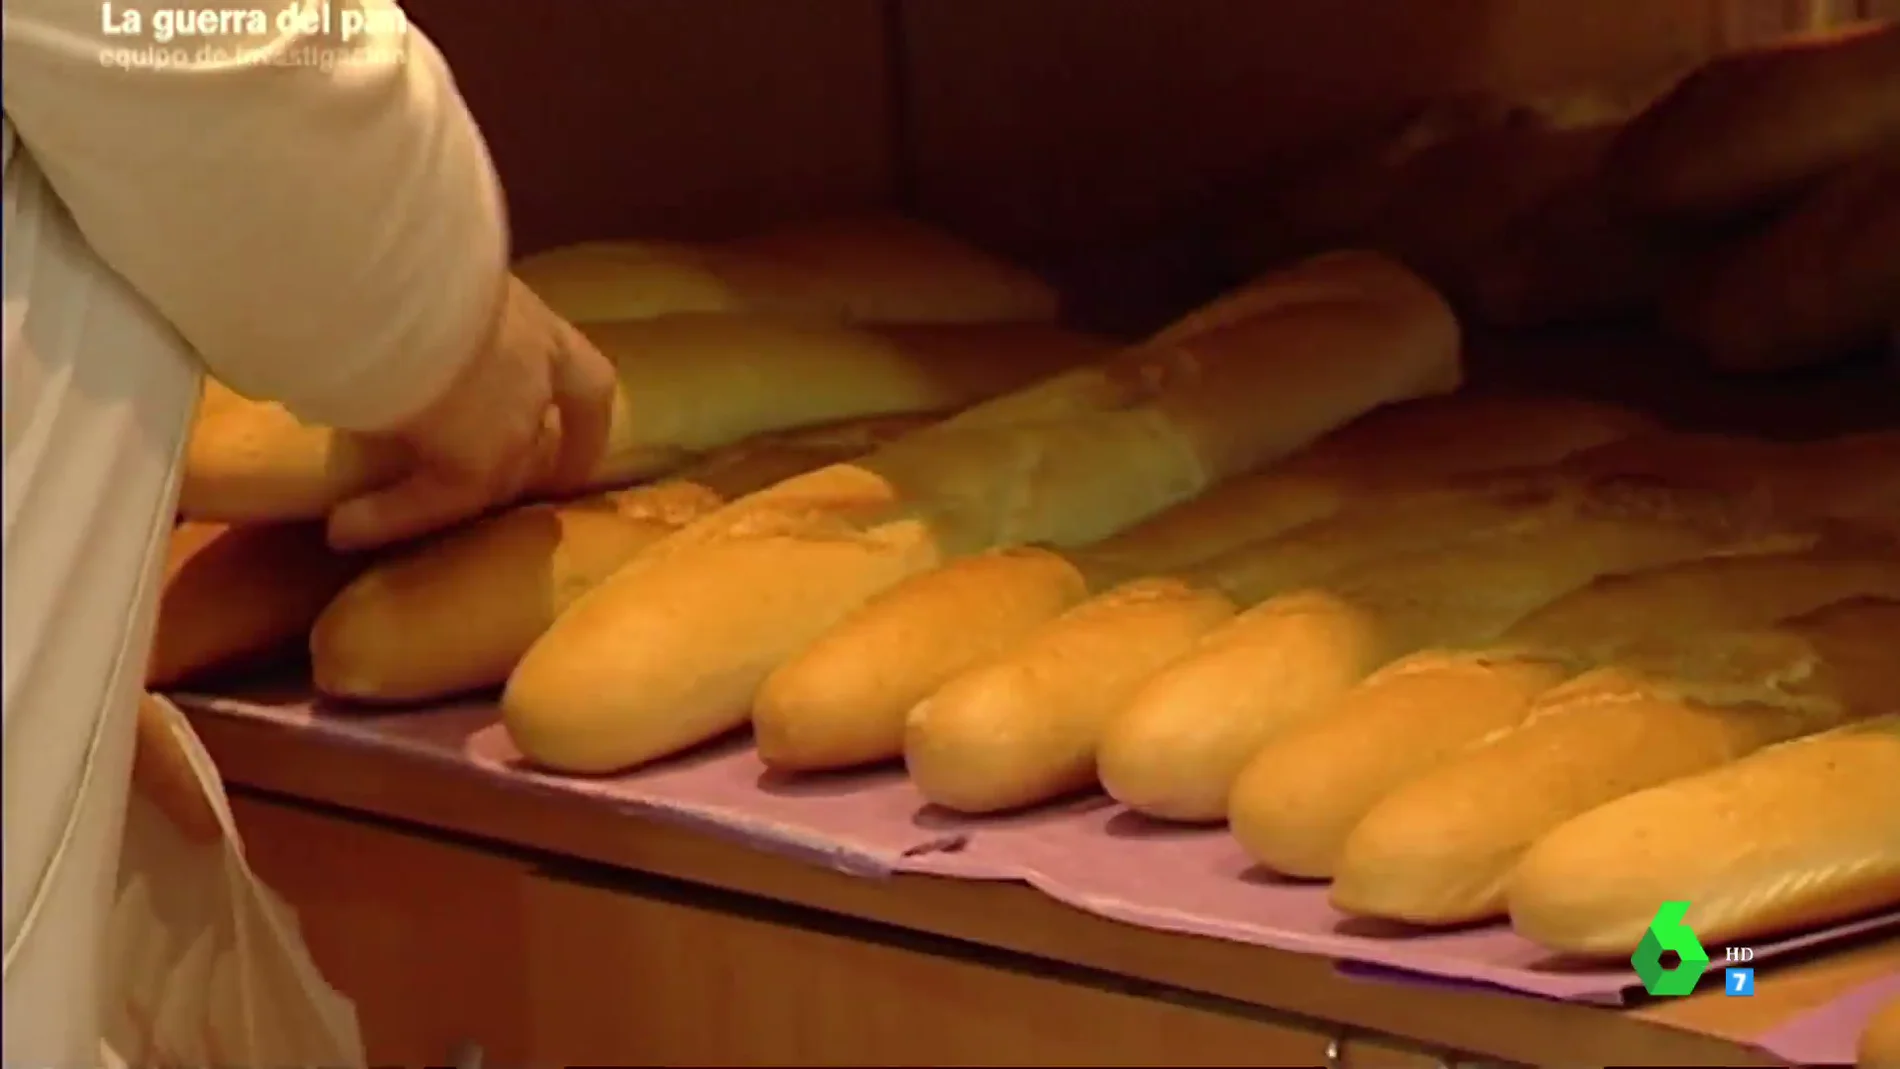 La guerra del pan: pactar el precio de la barra a 20 céntimos, una práctica ilegal de alto riesgo